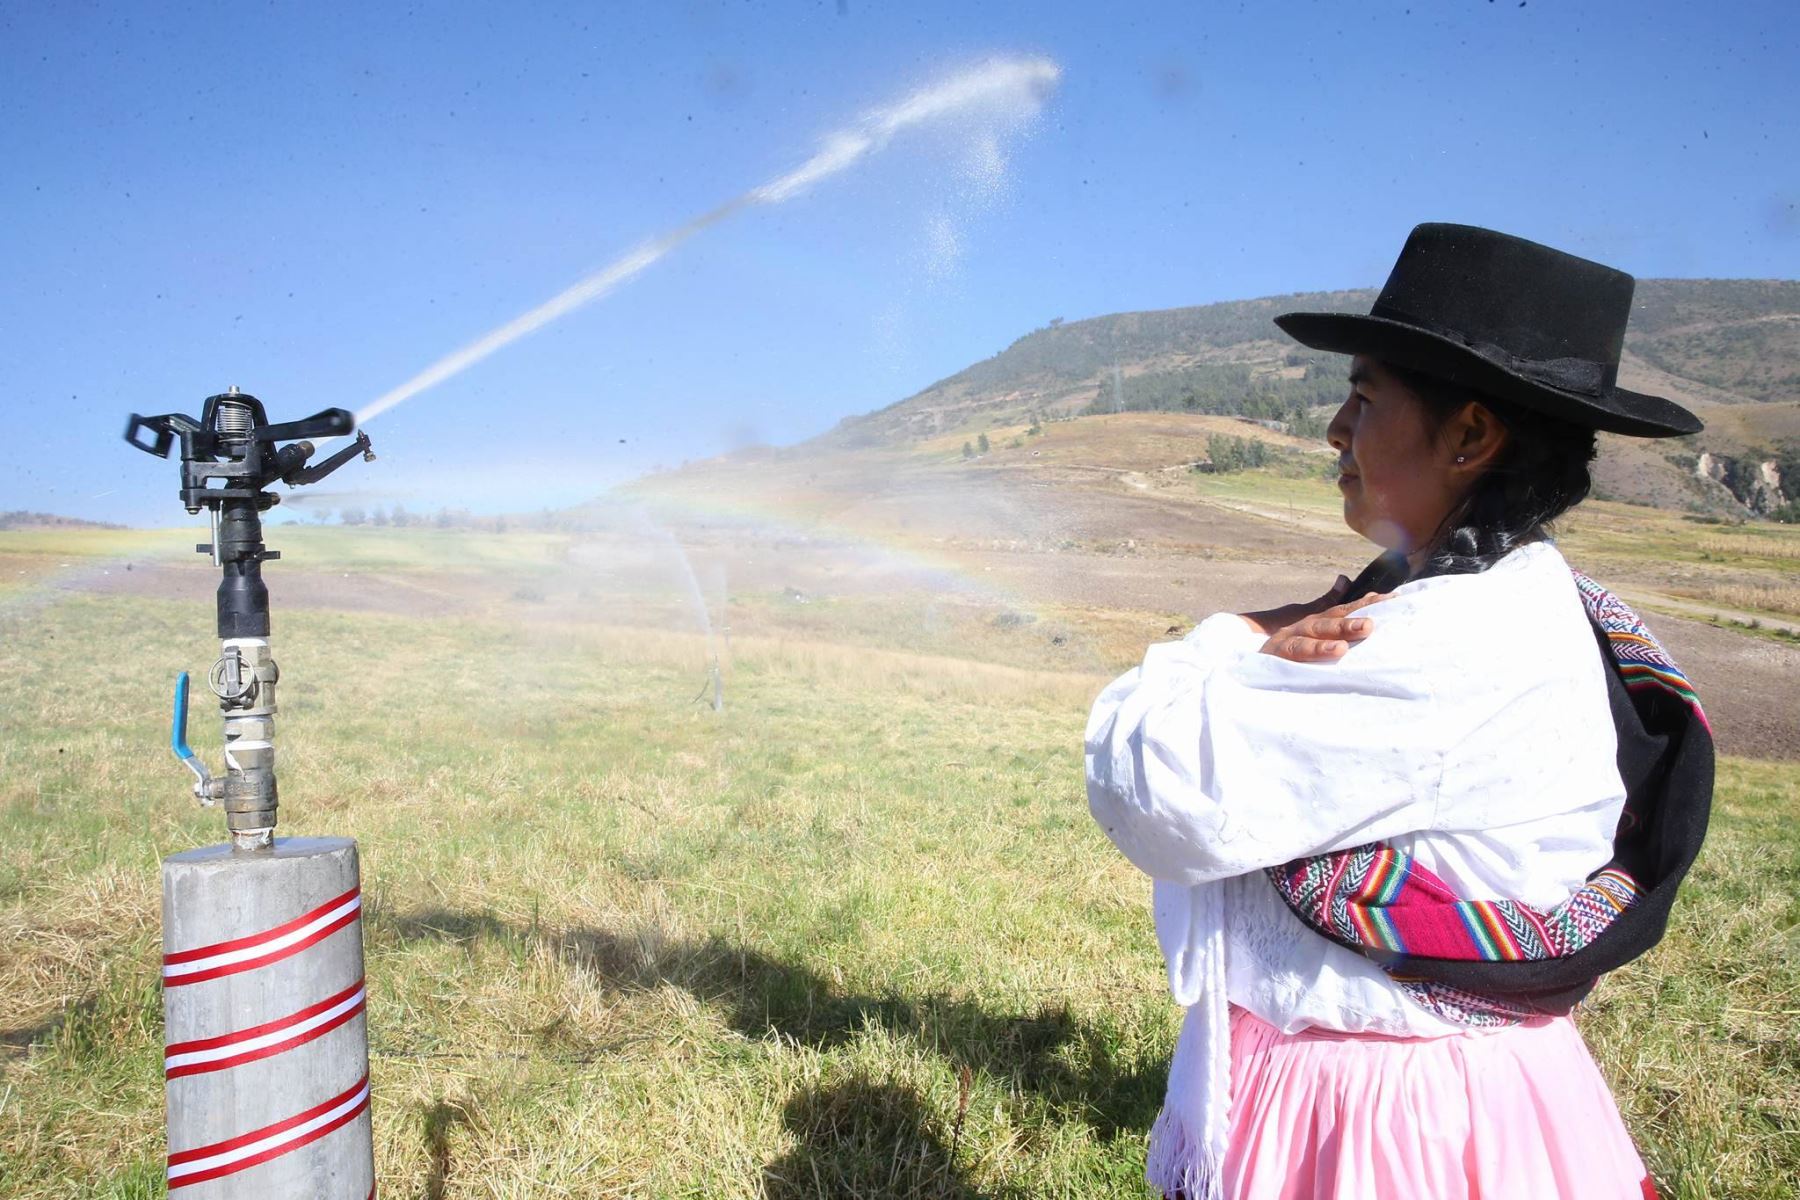 Jefe de Estado supervisa el programa “Sierra Azul”, en la provincia de Angaraes, región Huancavelica.Foto: ANDINA/ Prensa Presidencia